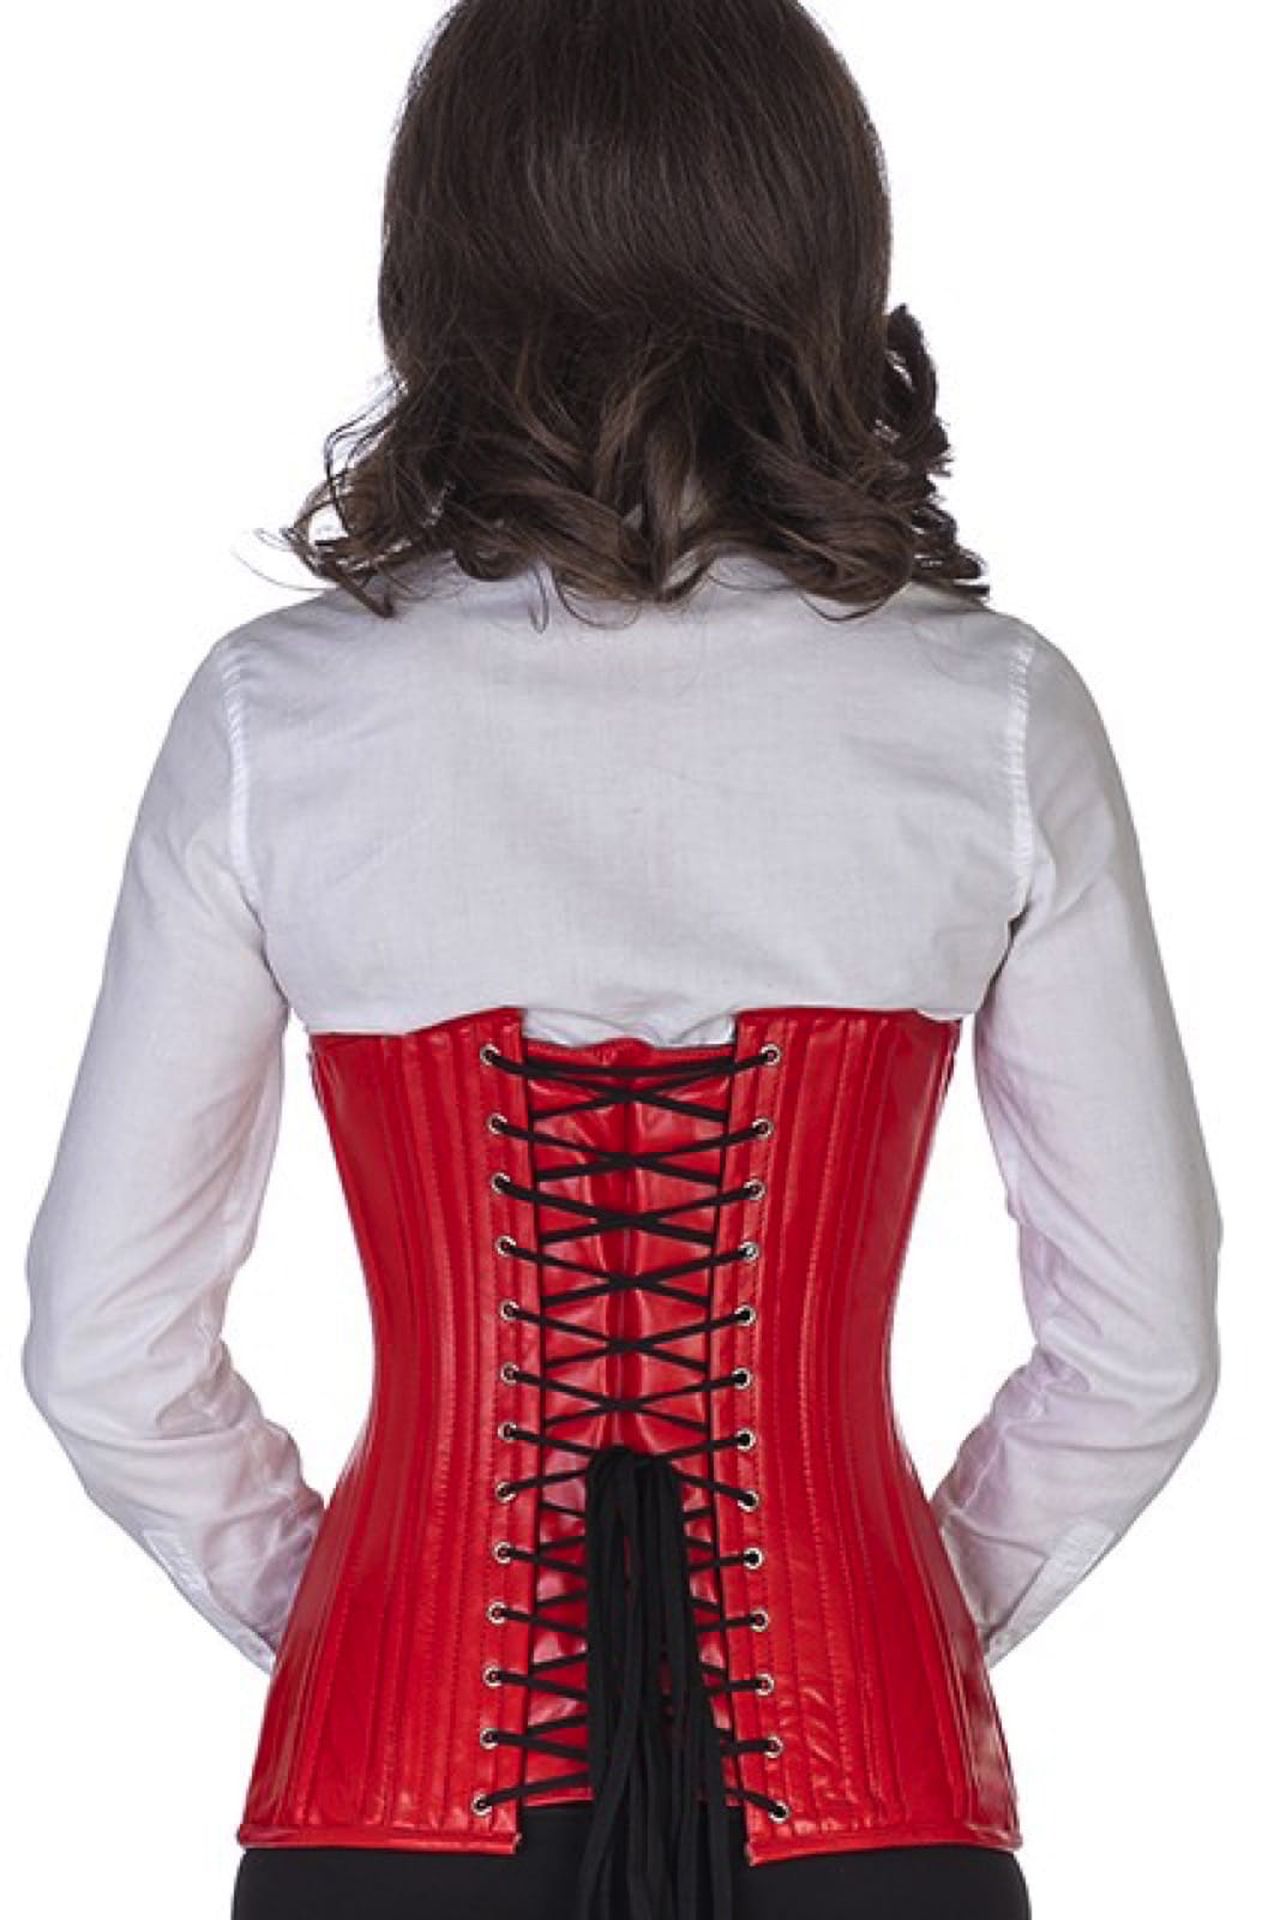 Leren corset rood onderborst rond gevormd Korset ln23